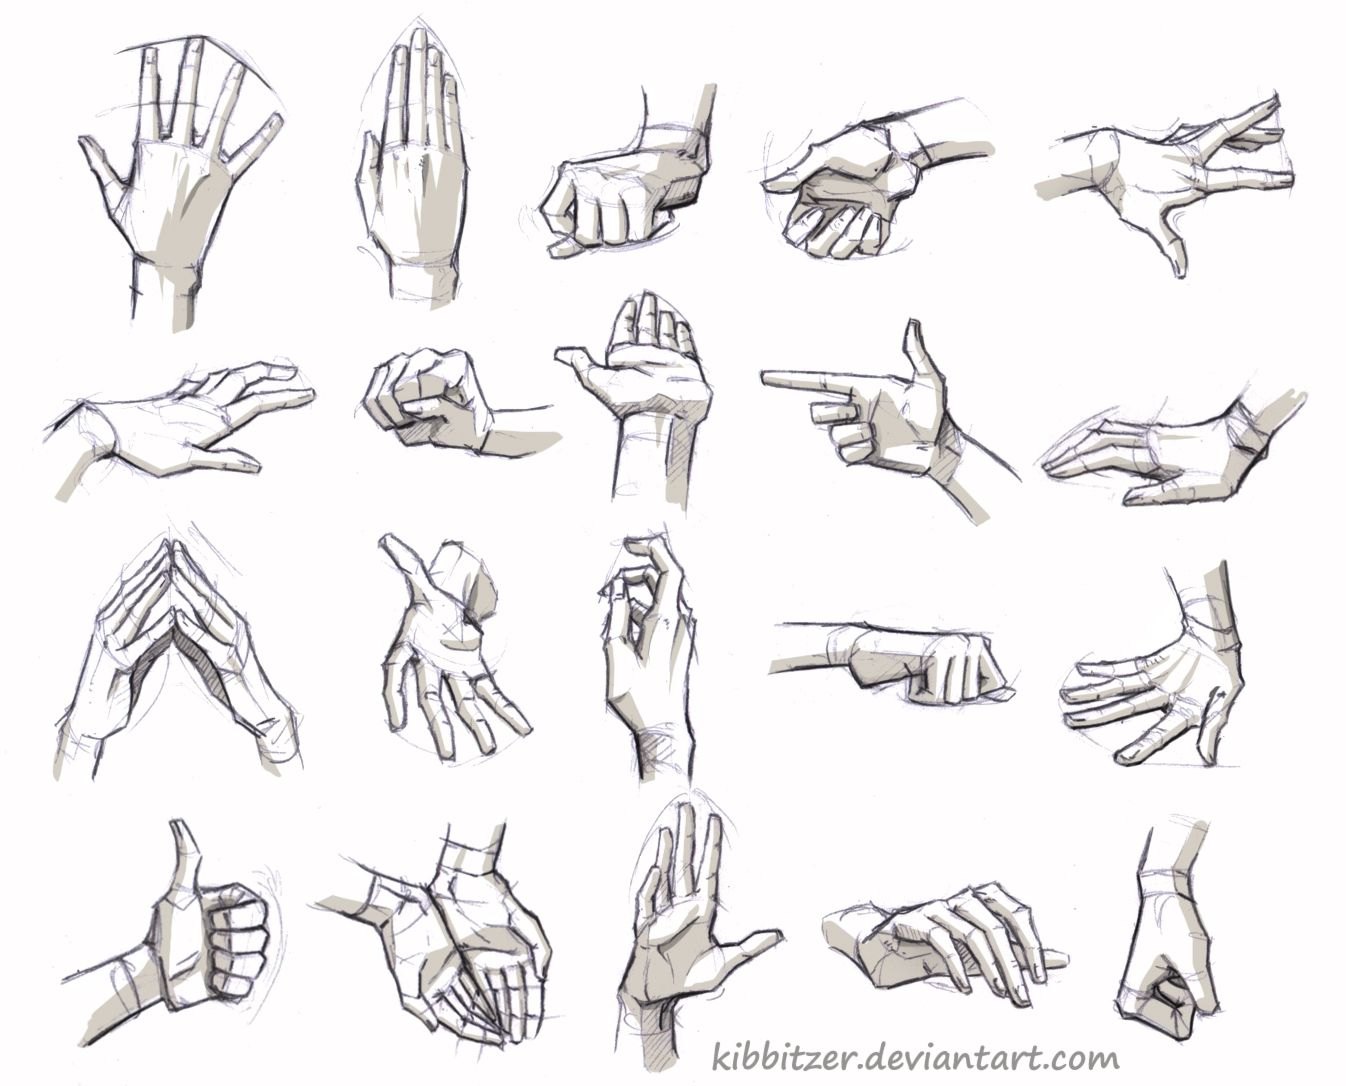 Кисть руки сбоку референс. Рука вид сбоку референс. Руки в разных ракурсах. Анатомия рук для рисования.